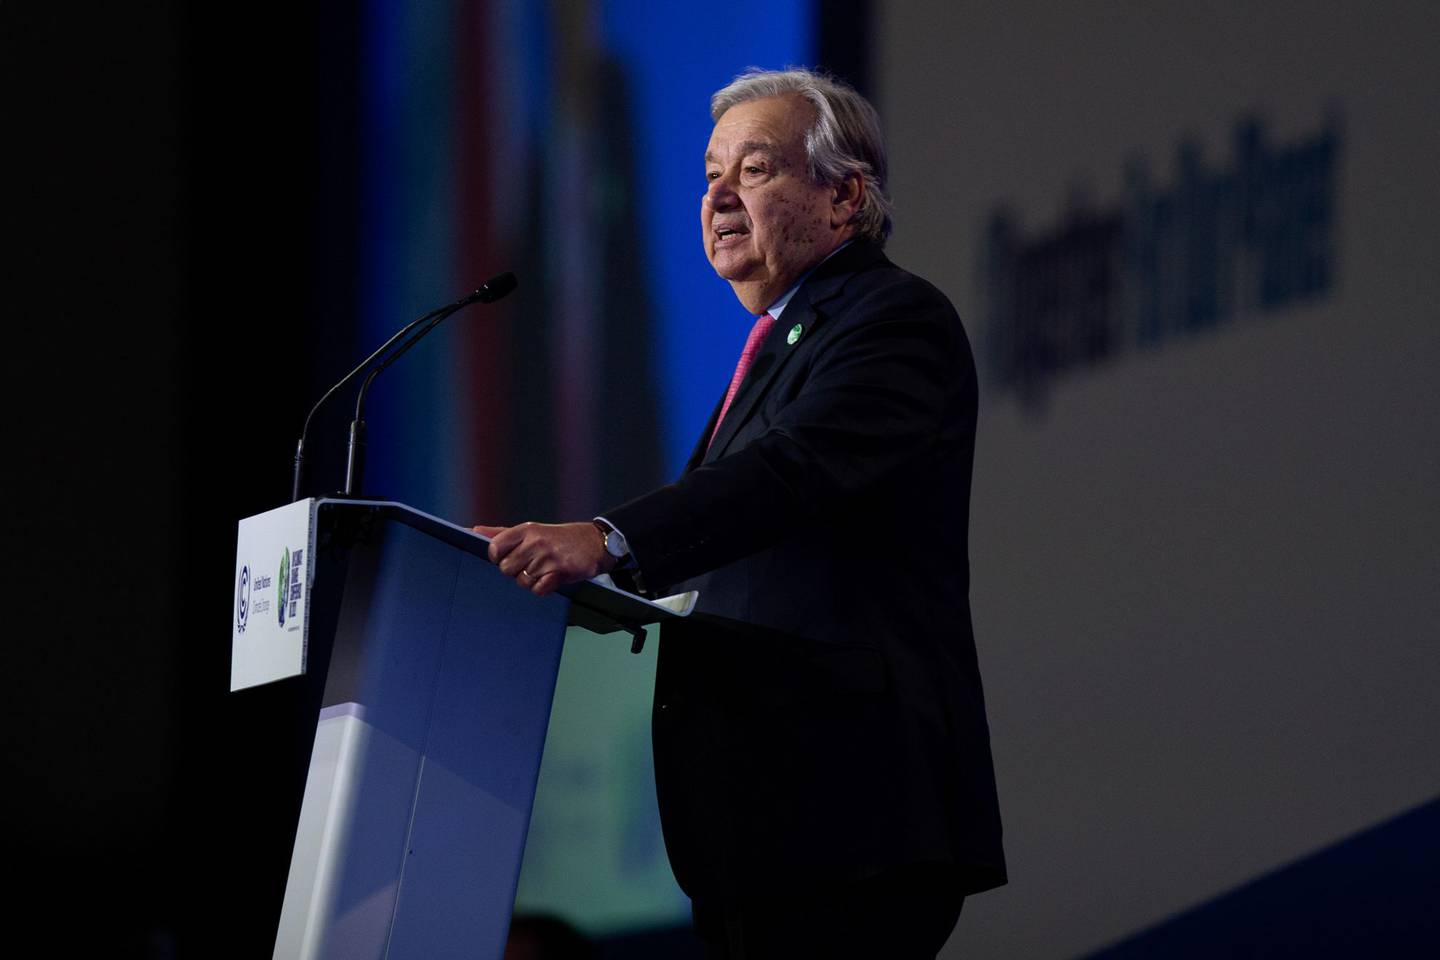 Antonio Guterres, secretario general de las Naciones Unidas, pronuncia un discurso durante las conversaciones sobre el clima de la COP26 en Glasgow, Reino Unido, el lunes 1 de noviembre de 2021.dfd